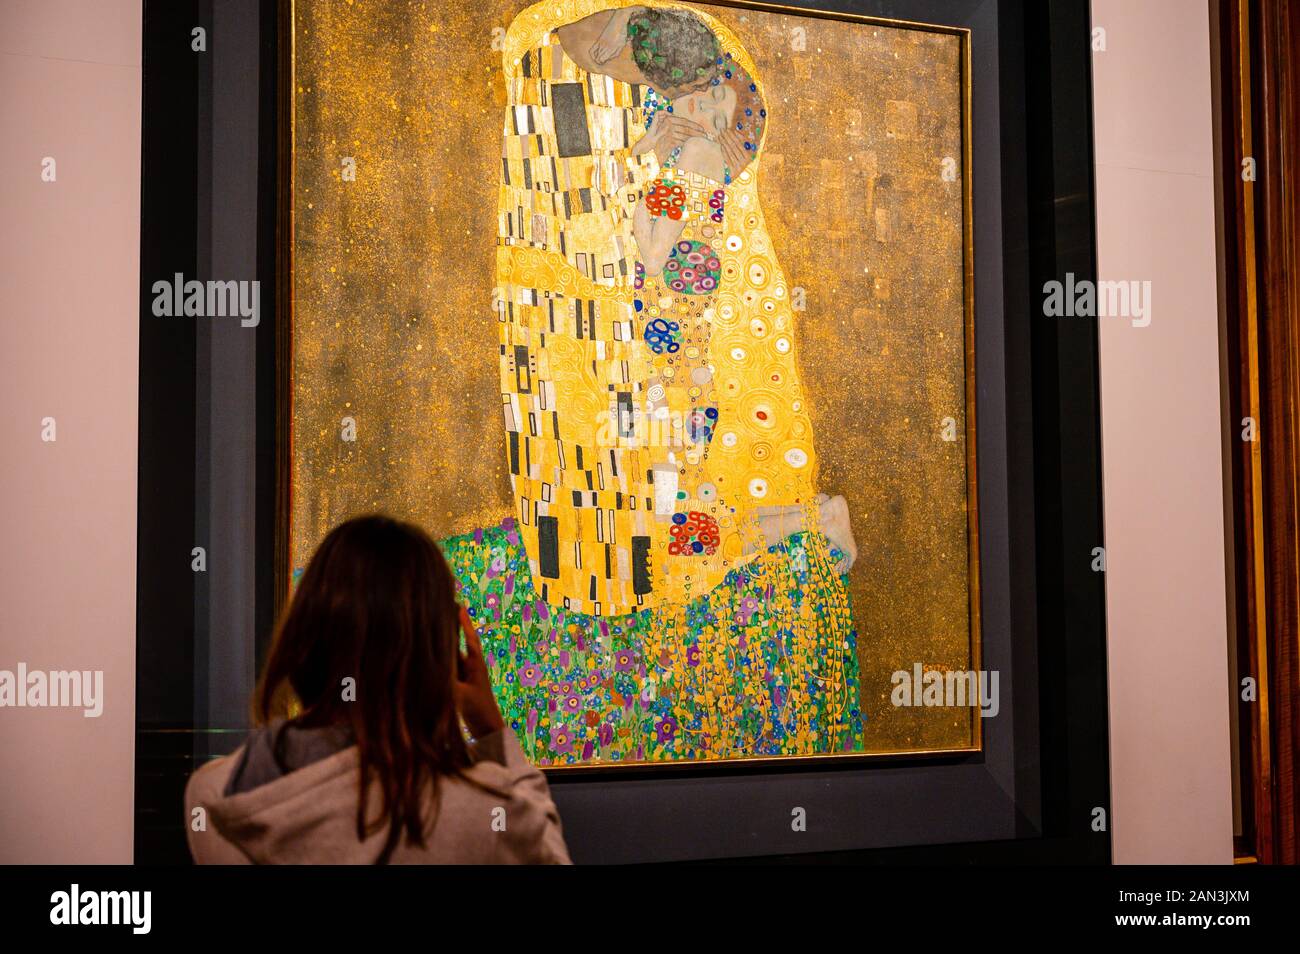 Der Kuss (Liebhaber). Öl und Blattgold auf Leinwand. 1907/1908. Von den Österreichischen symbolistische Maler Gustav Klimt. Belvedere Museum, Wien, Österreich. Stockfoto